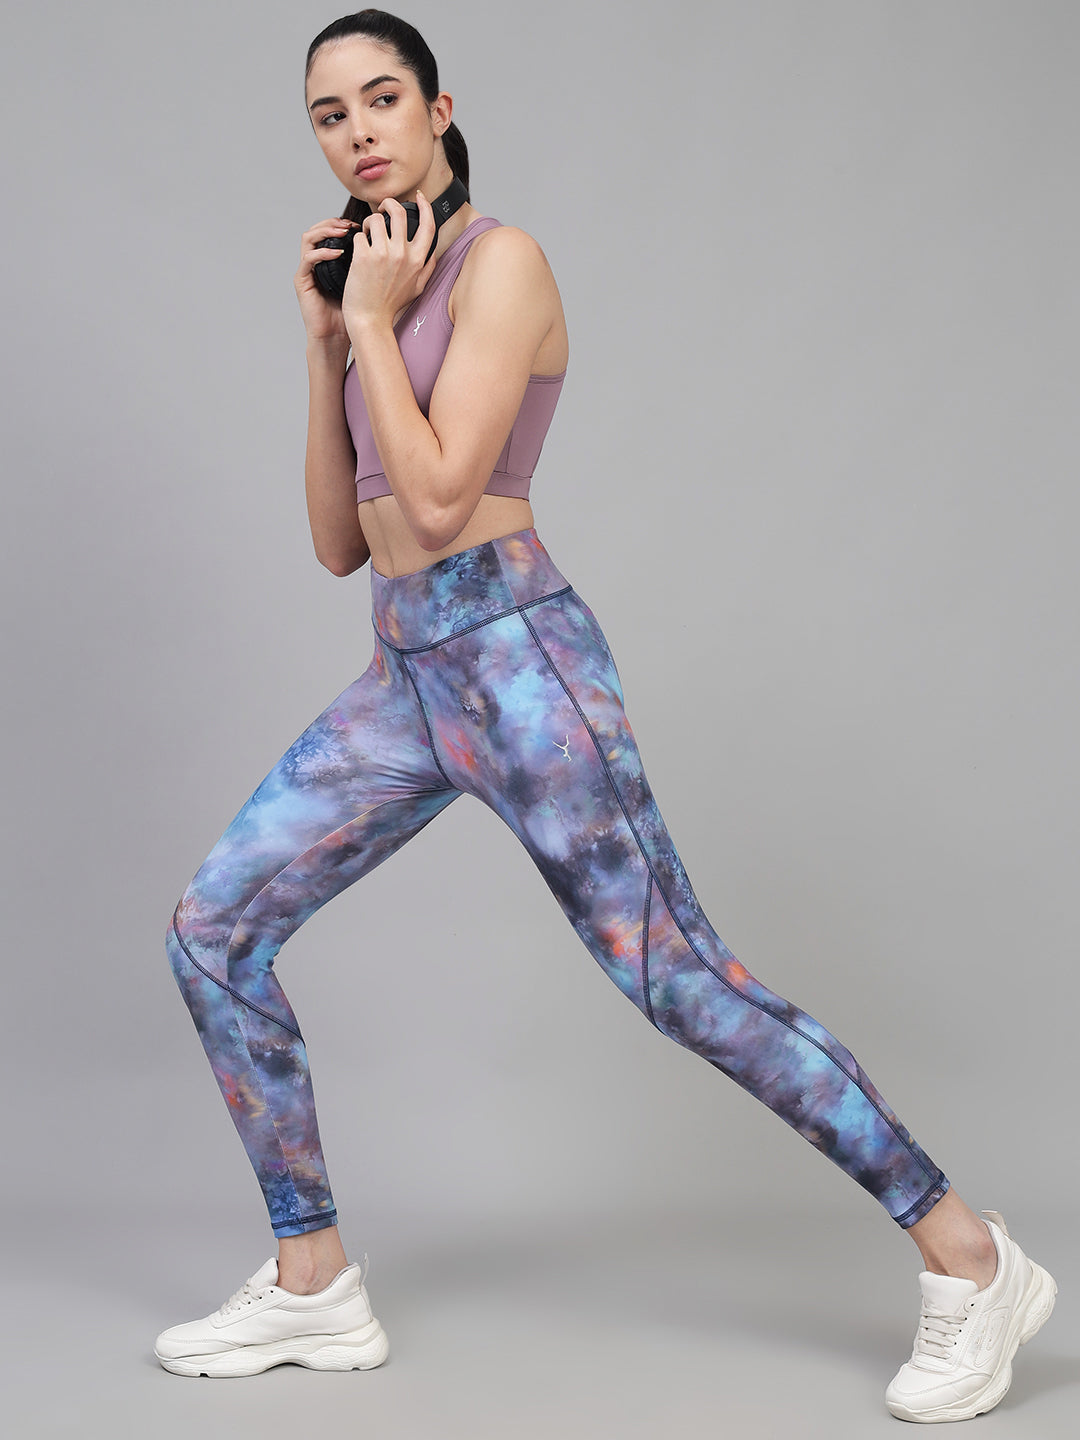 Galaxy Print High Waist Gym Wear/Yoga Wear Ankle Length Leggings